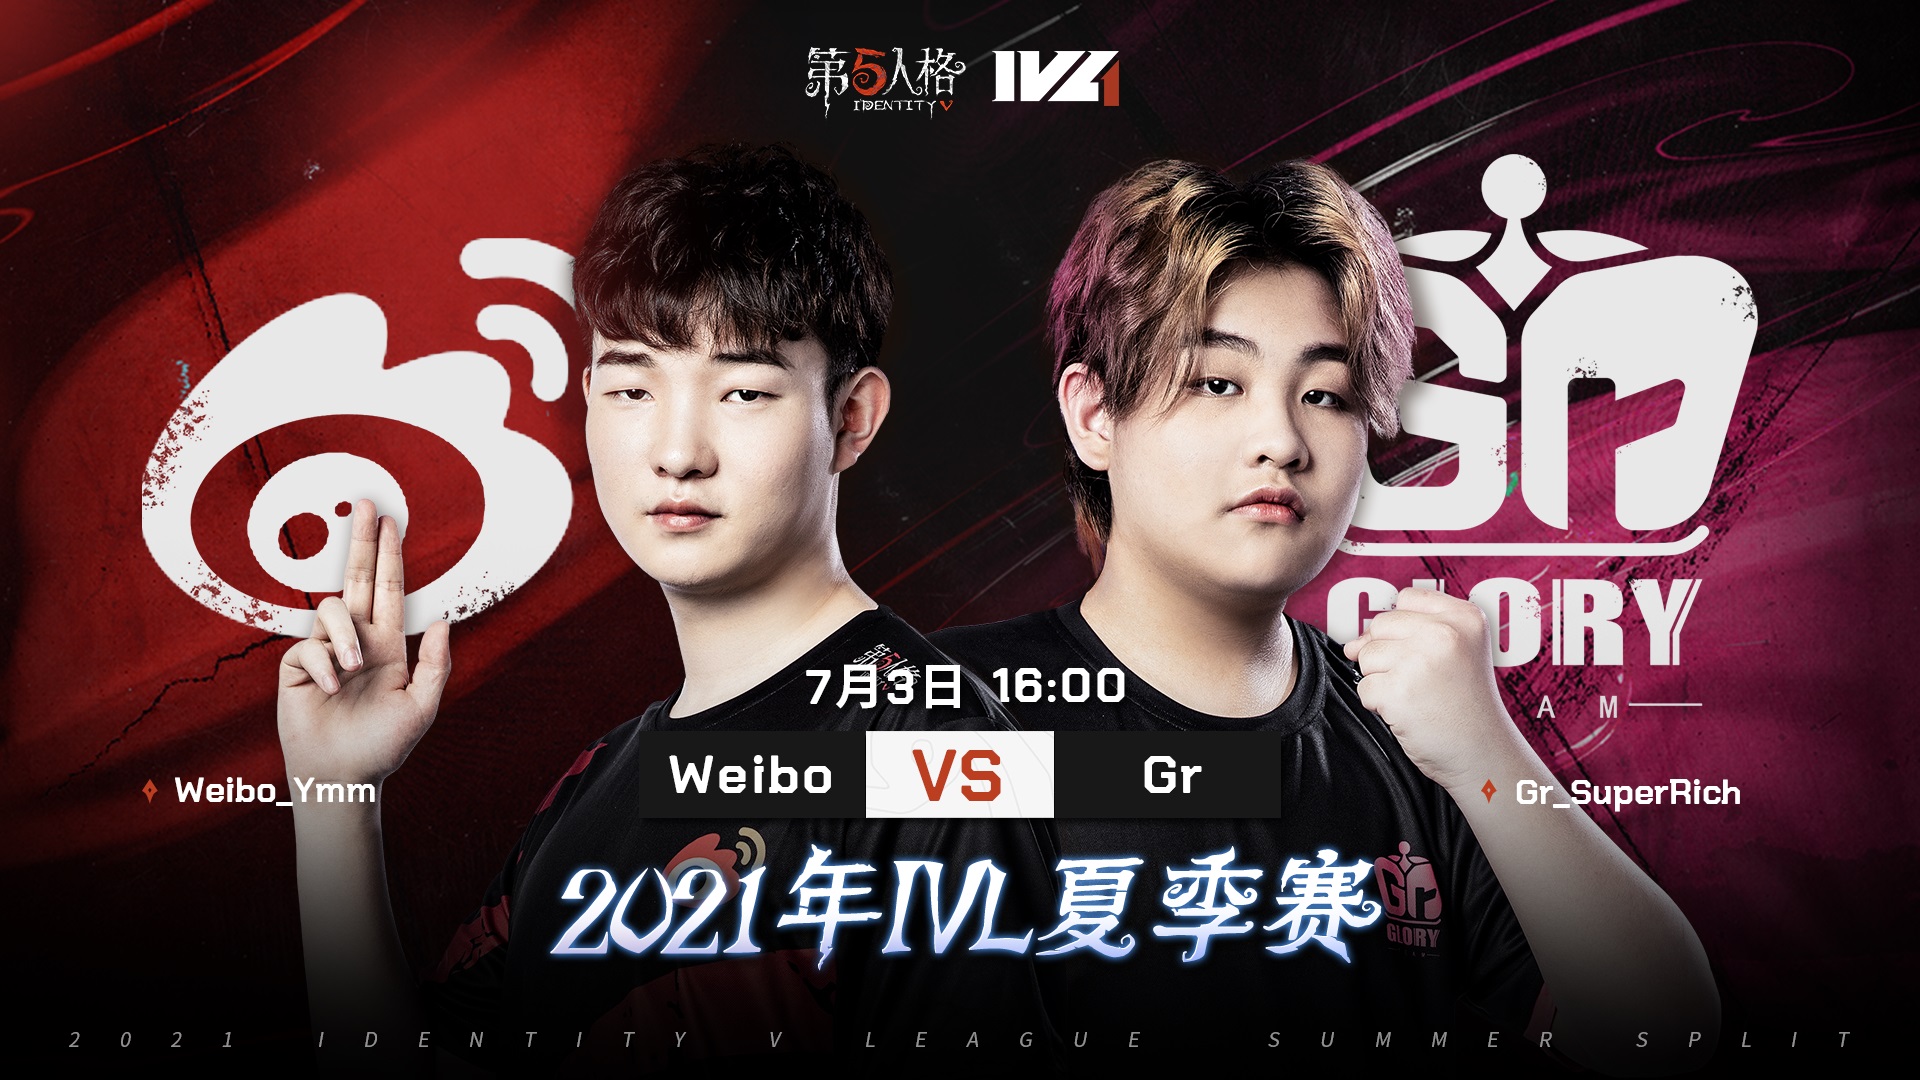 【2021IVL】夏季赛W4D2录像 Weibo vs Gr